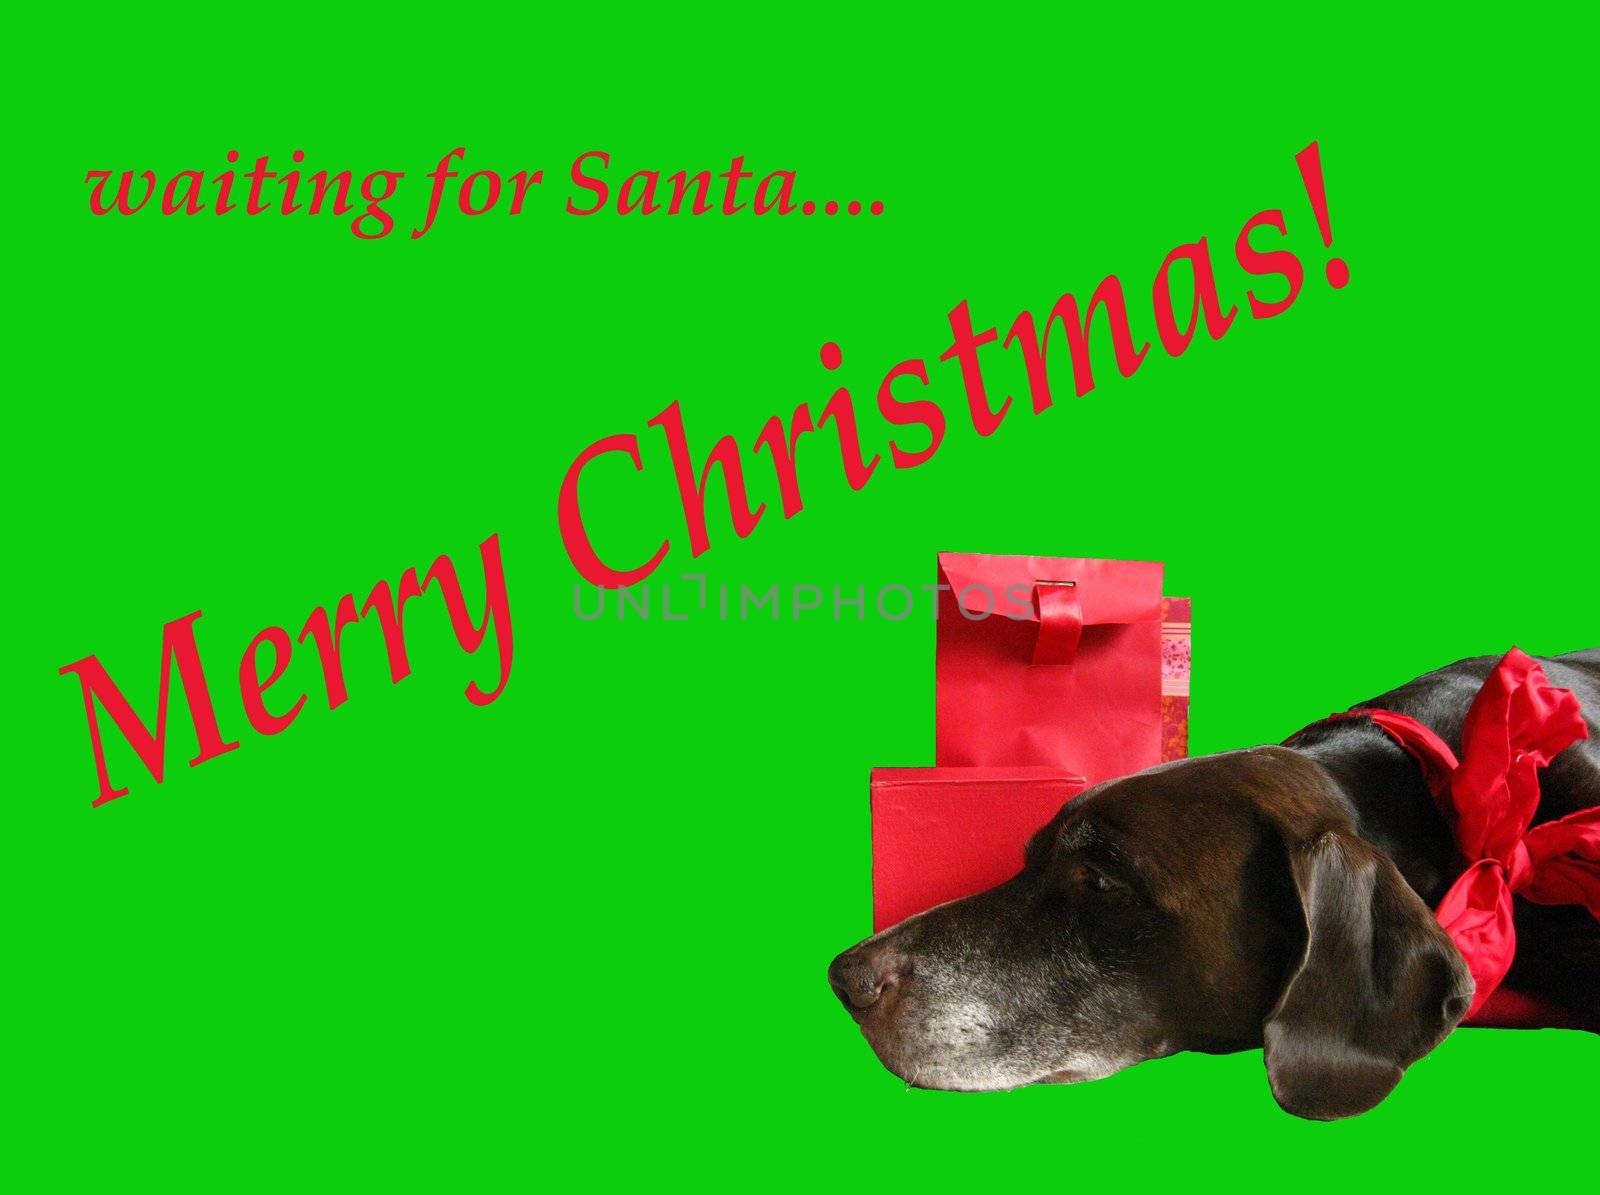 Dog waiting for santa claus - Christmas Greeting